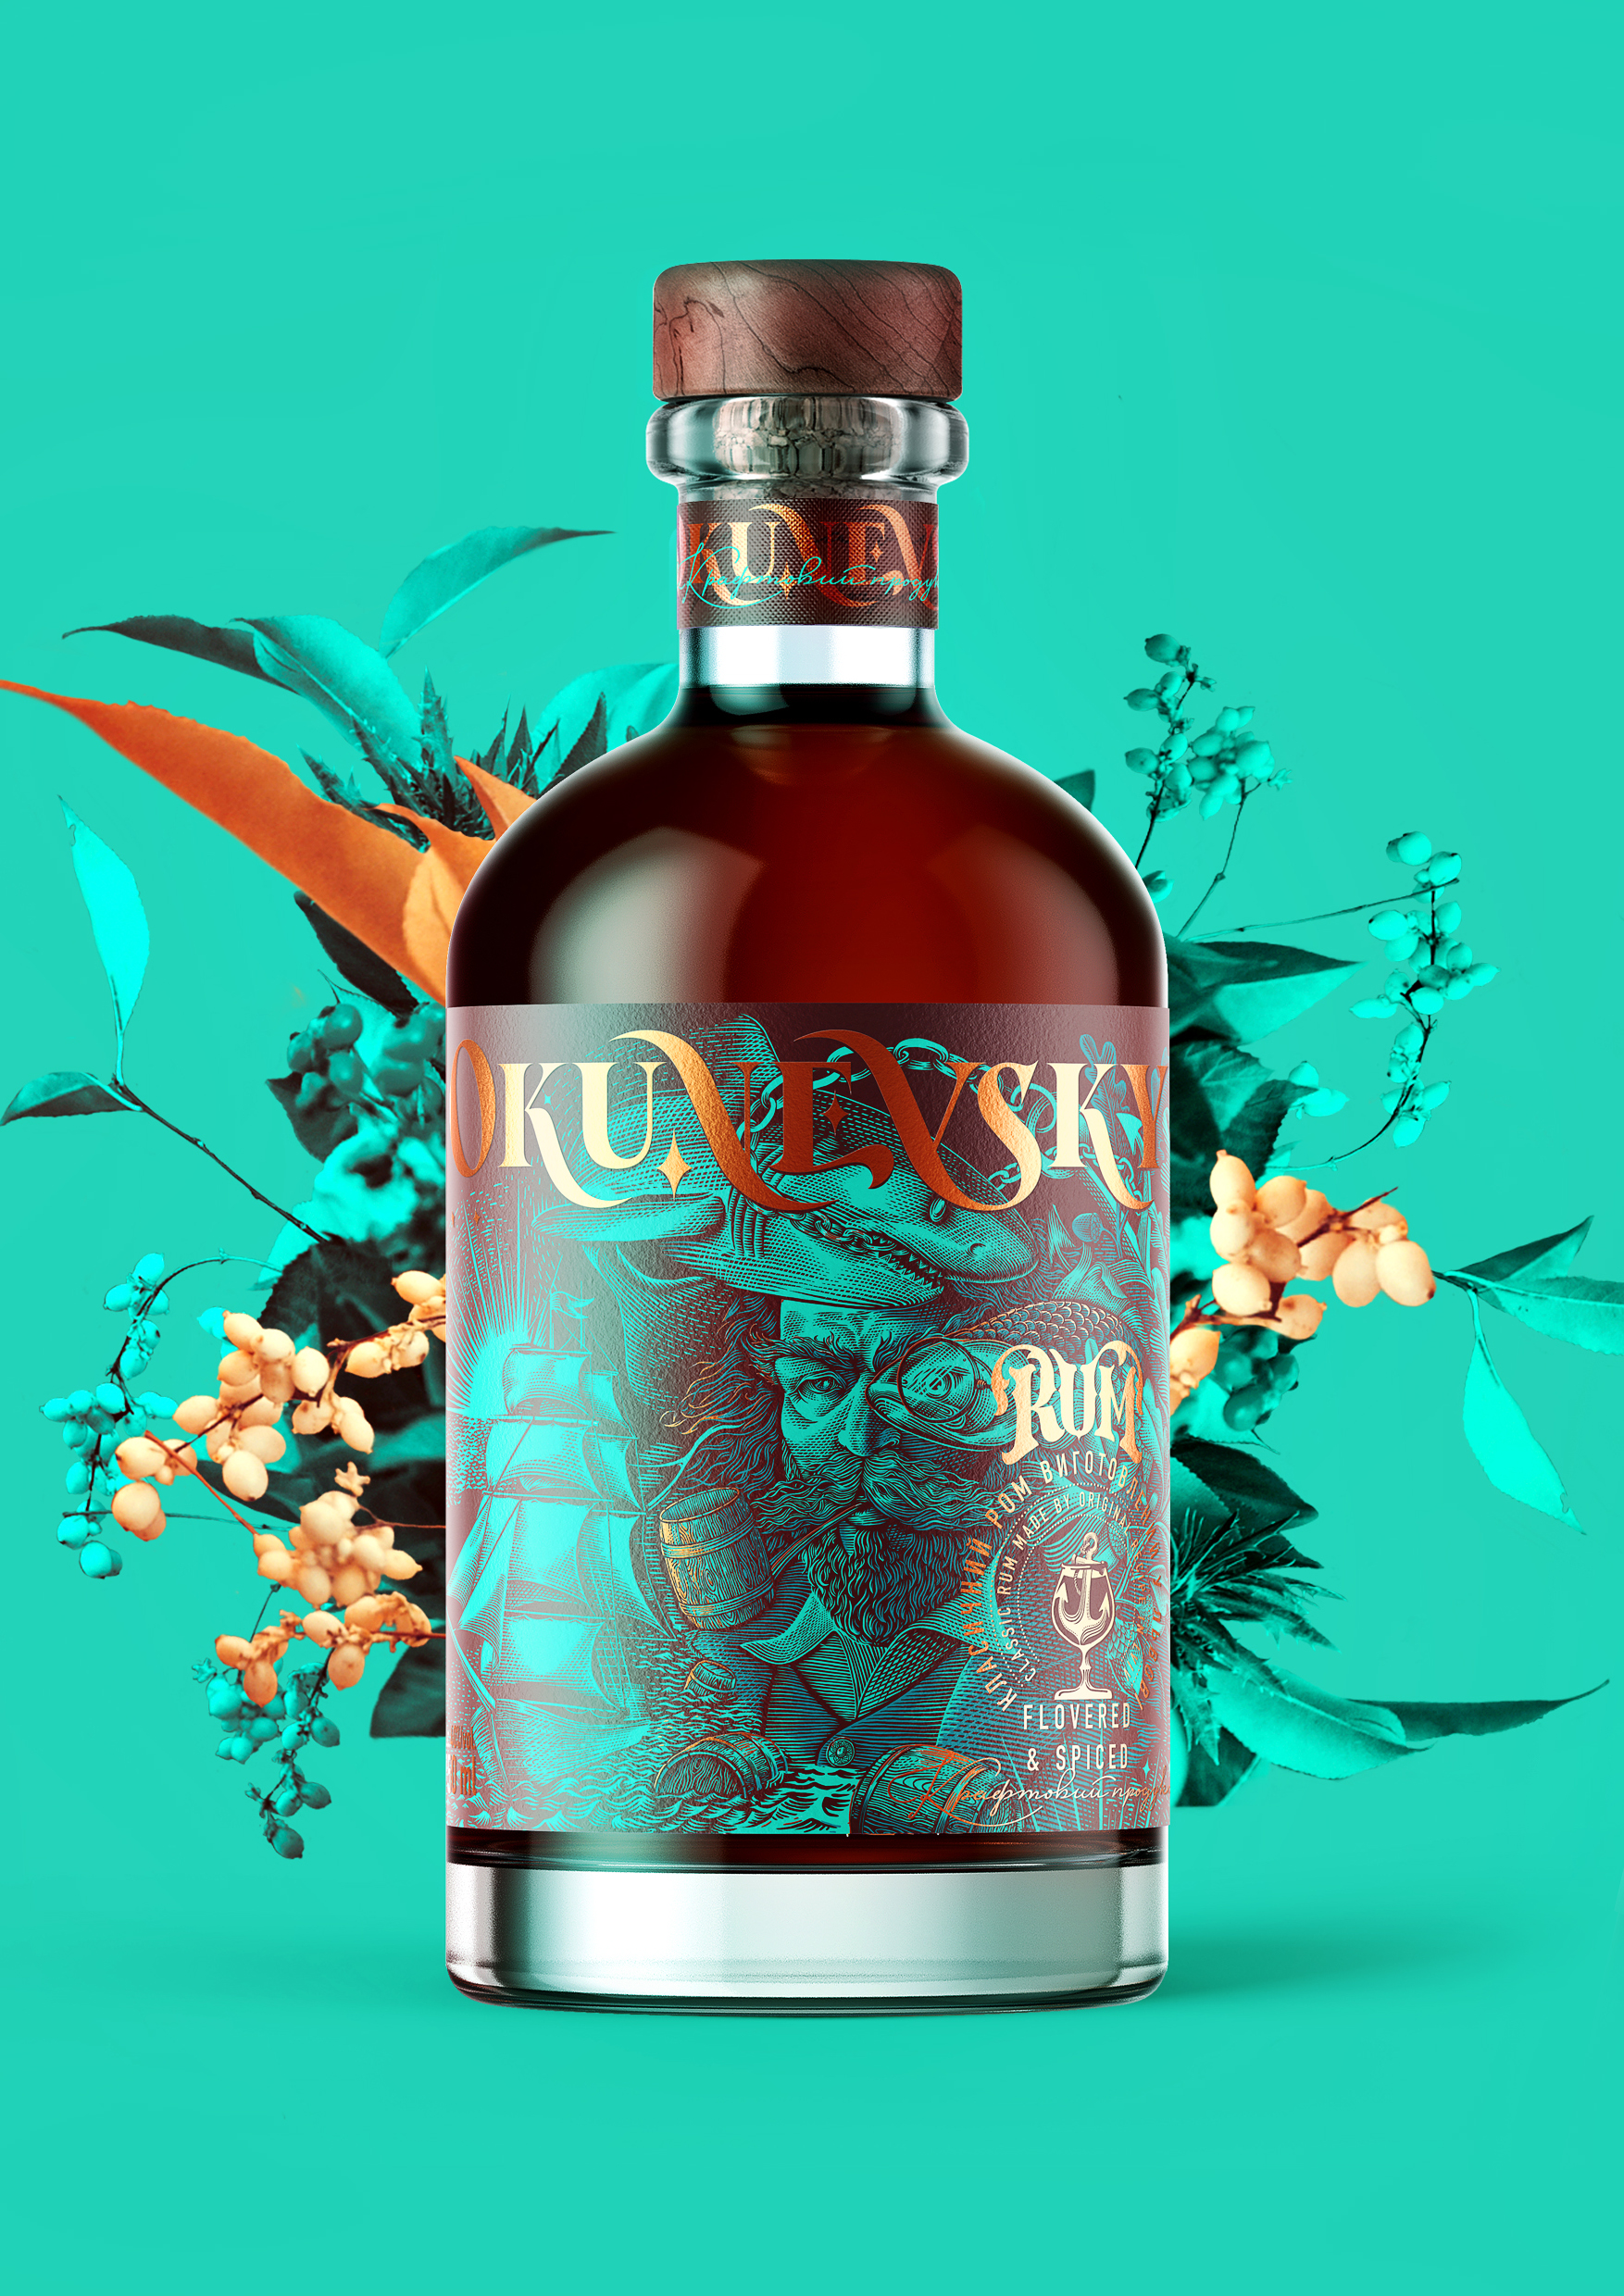 Okunevsky. Rum from adventures.